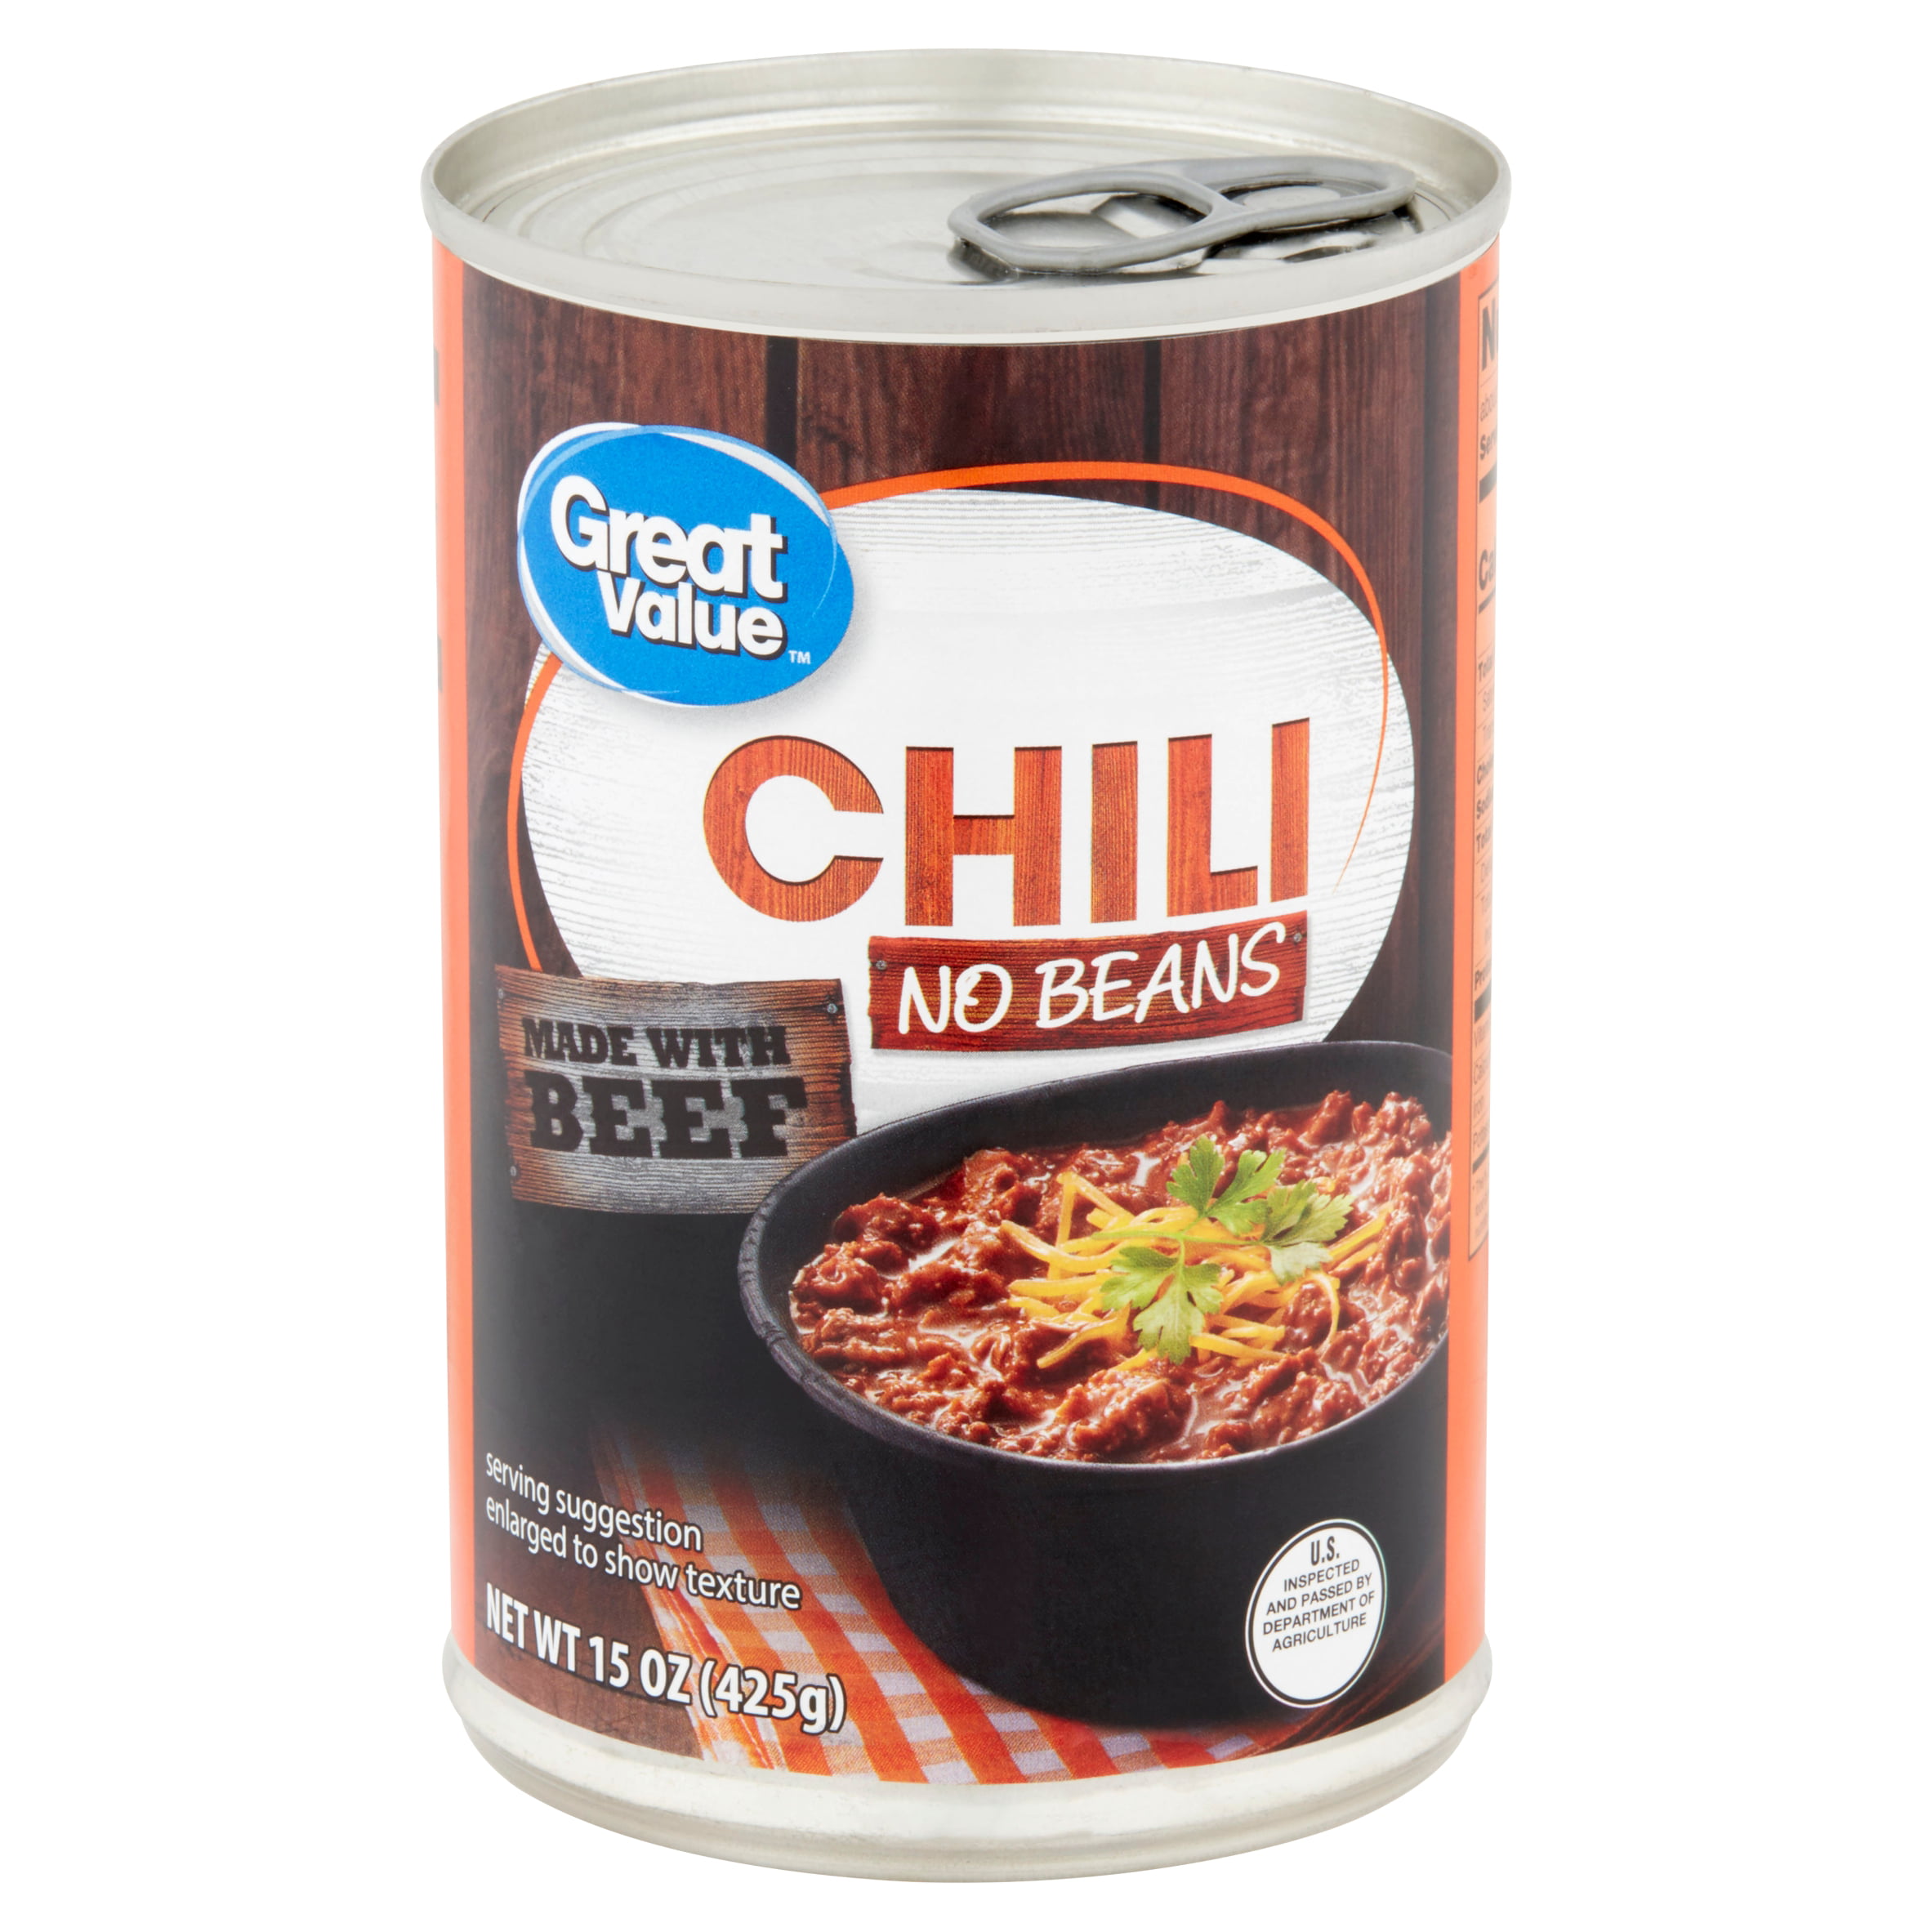 Great Value Chili No Beans, 15 oz - Walmart.com - Walmart.com